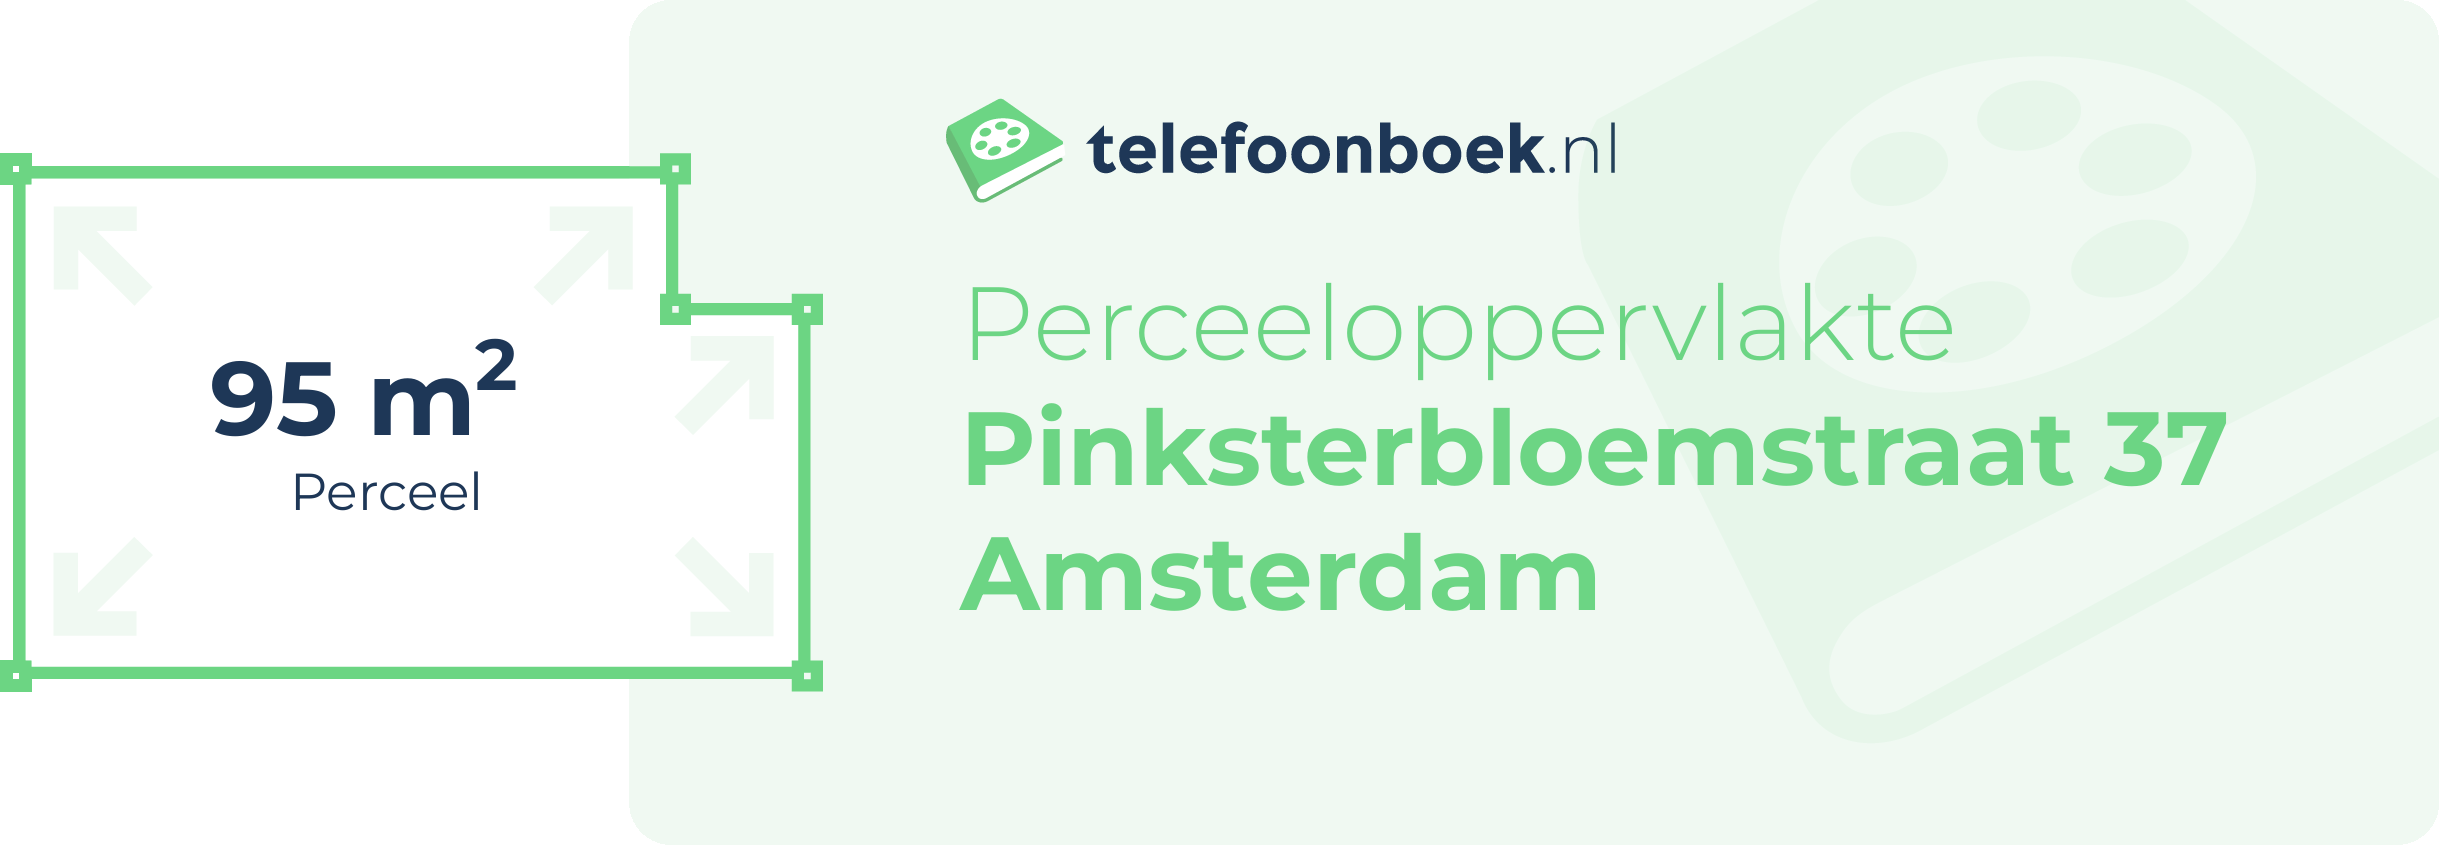 Perceeloppervlakte Pinksterbloemstraat 37 Amsterdam